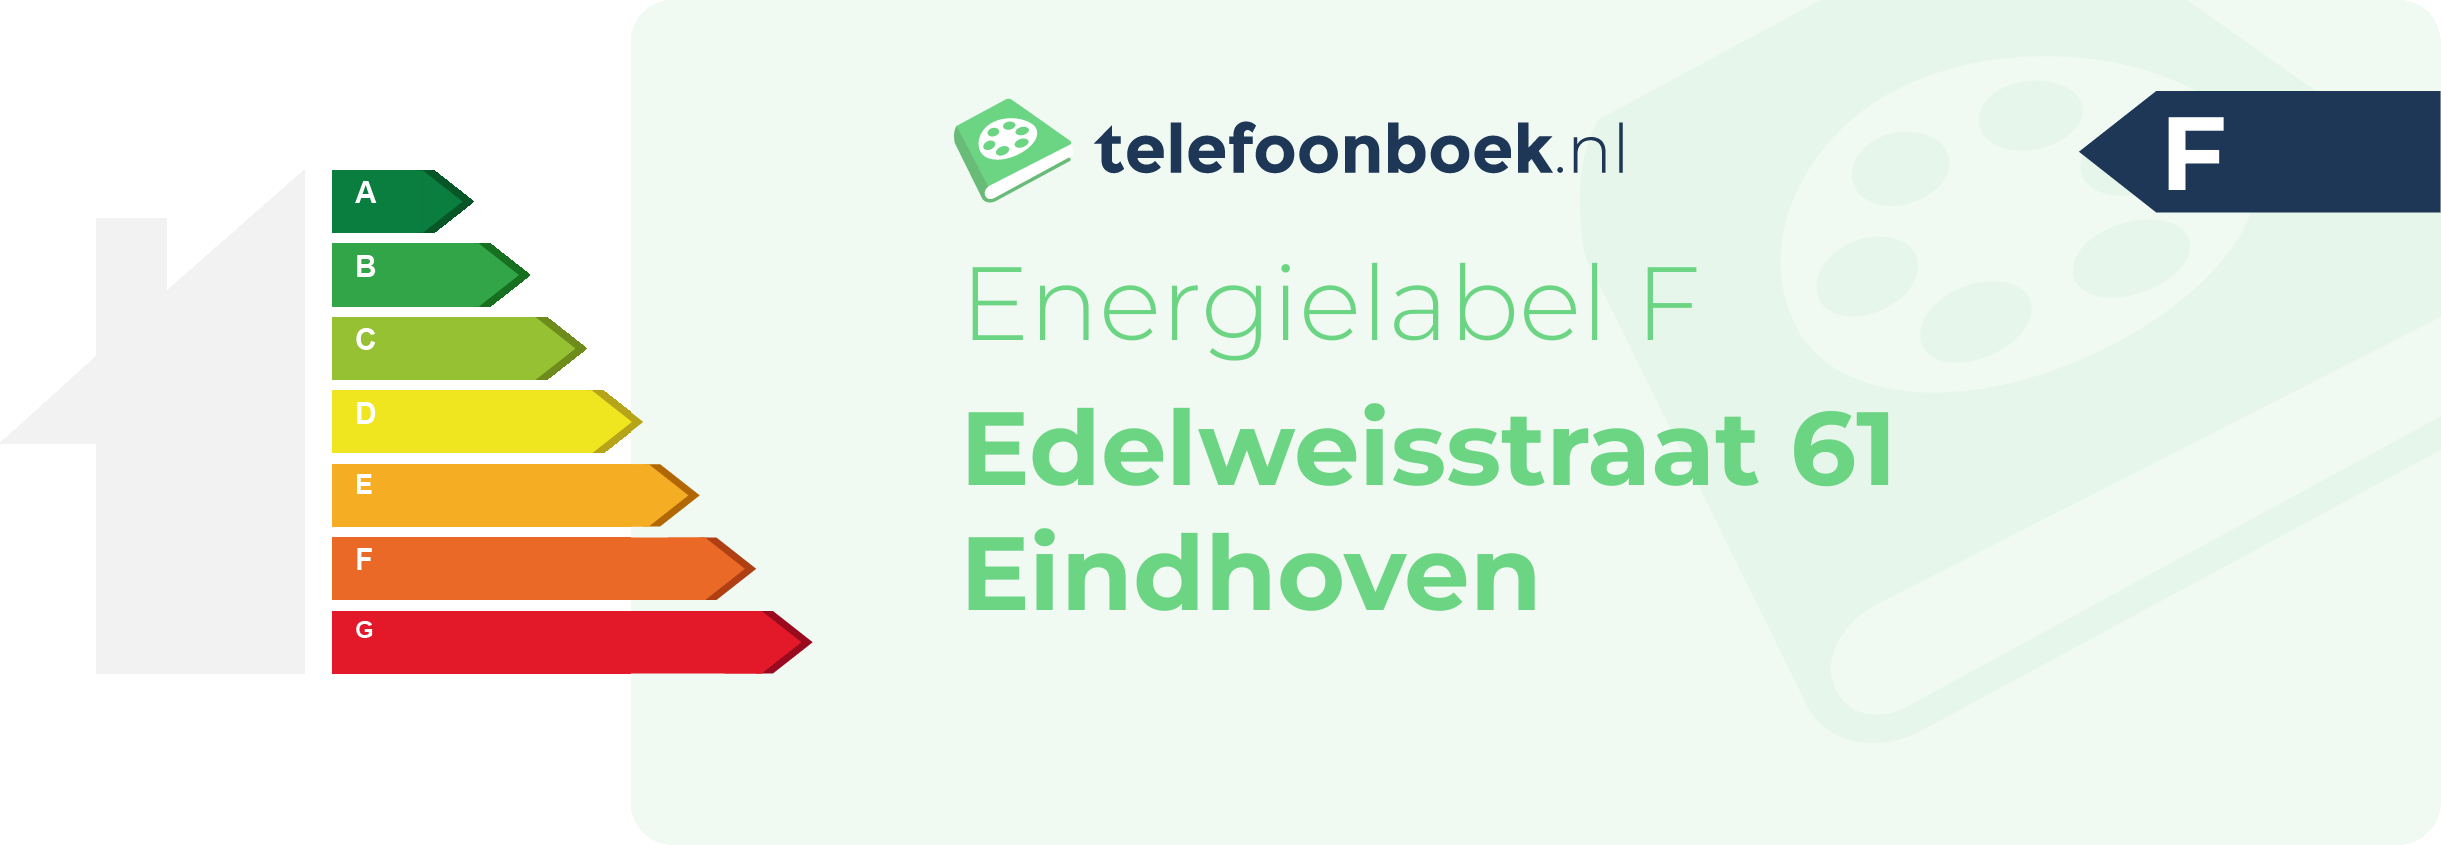 Energielabel Edelweisstraat 61 Eindhoven